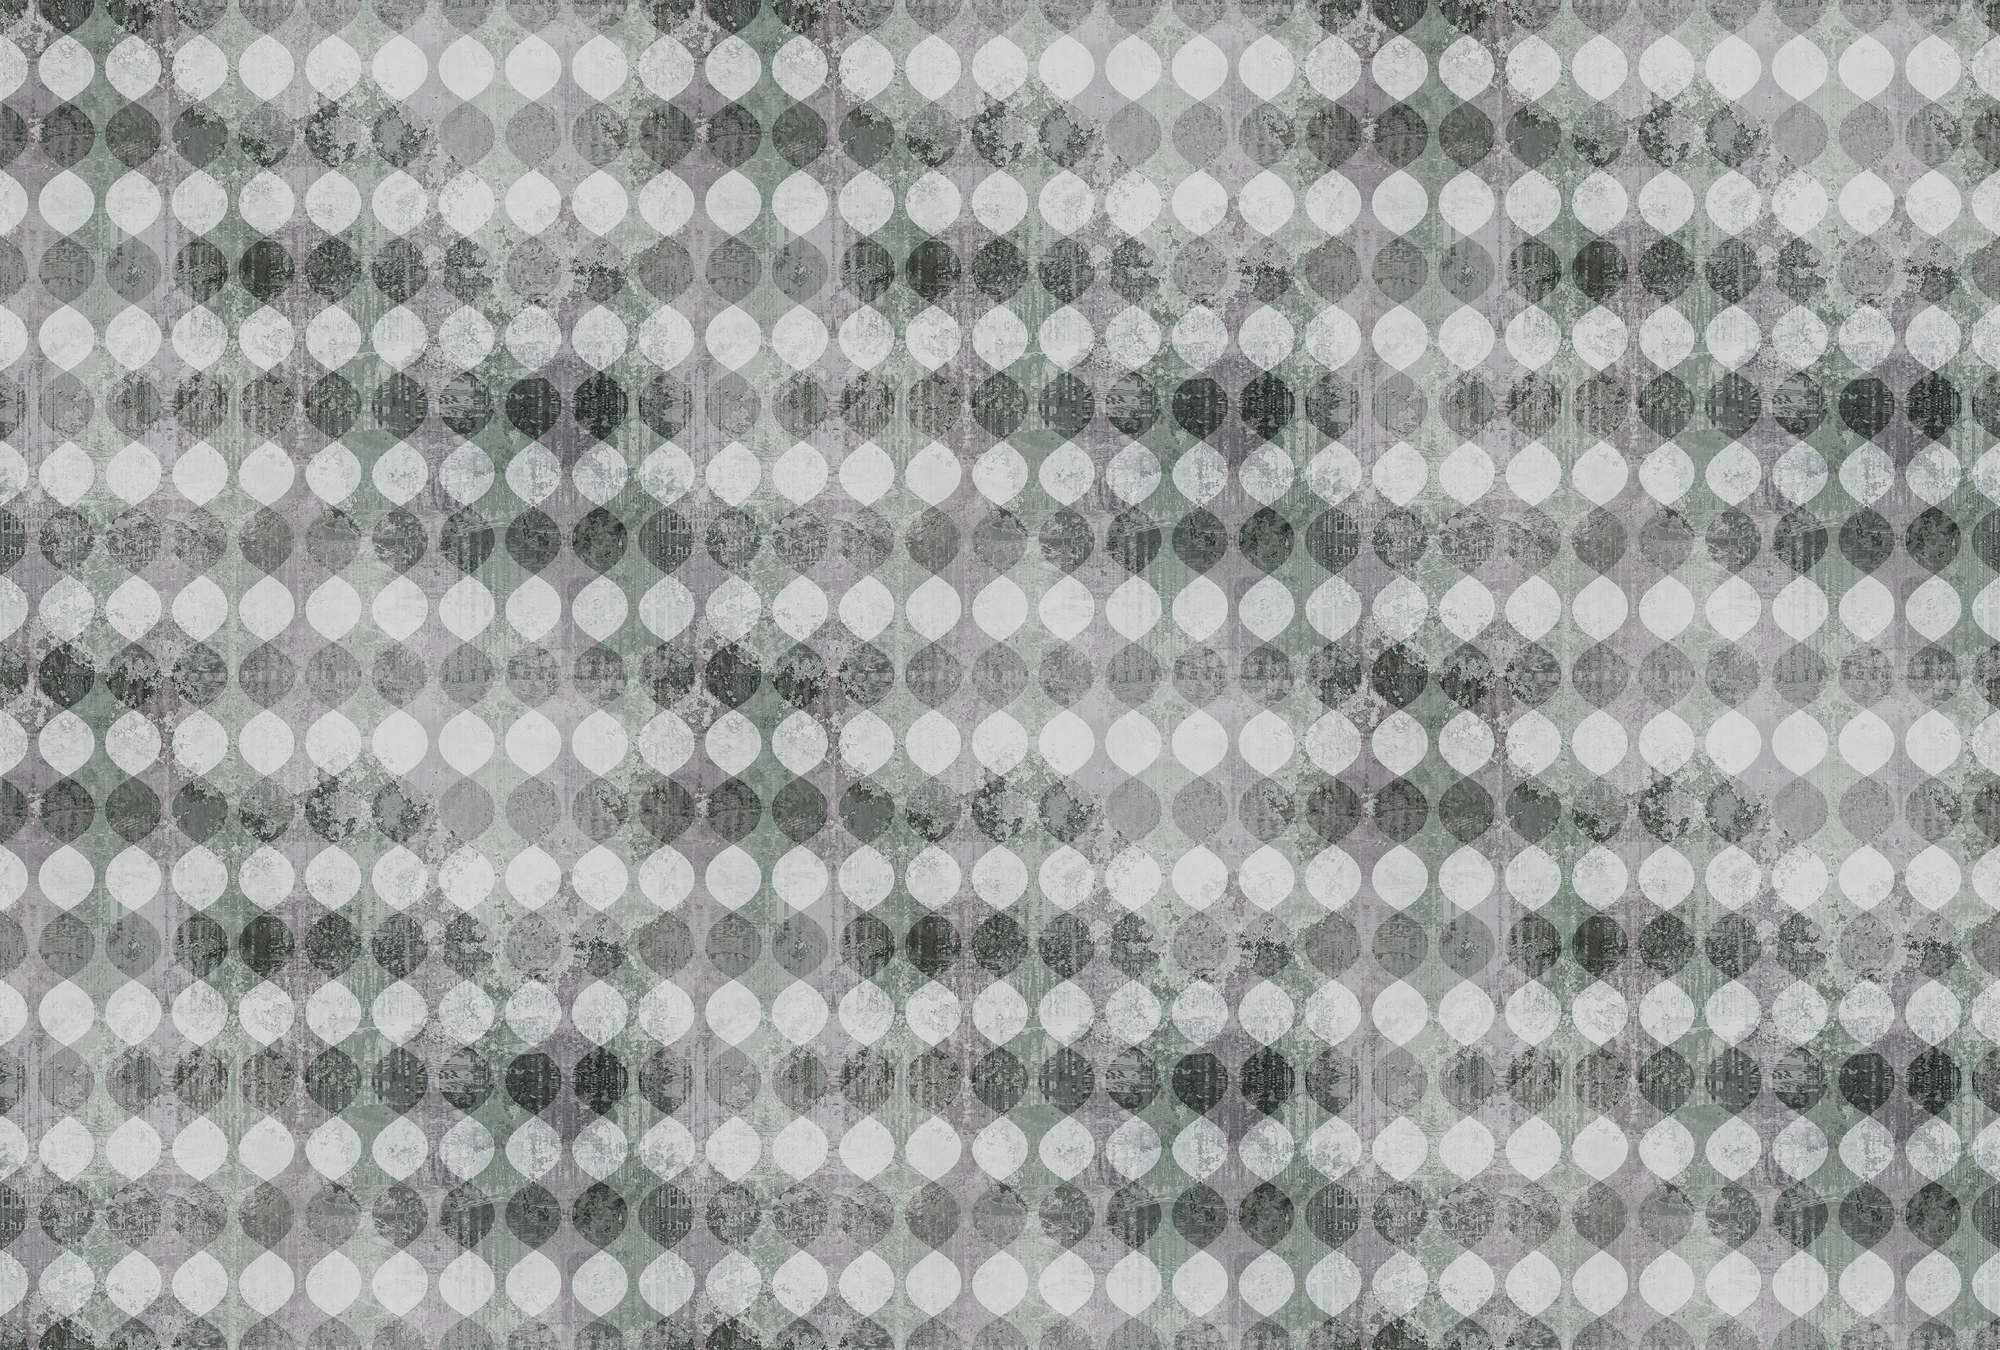             Garland 2 - 70s Retro Wallpaper, Grey - Grey, Green | Matt Smooth Non-woven
        